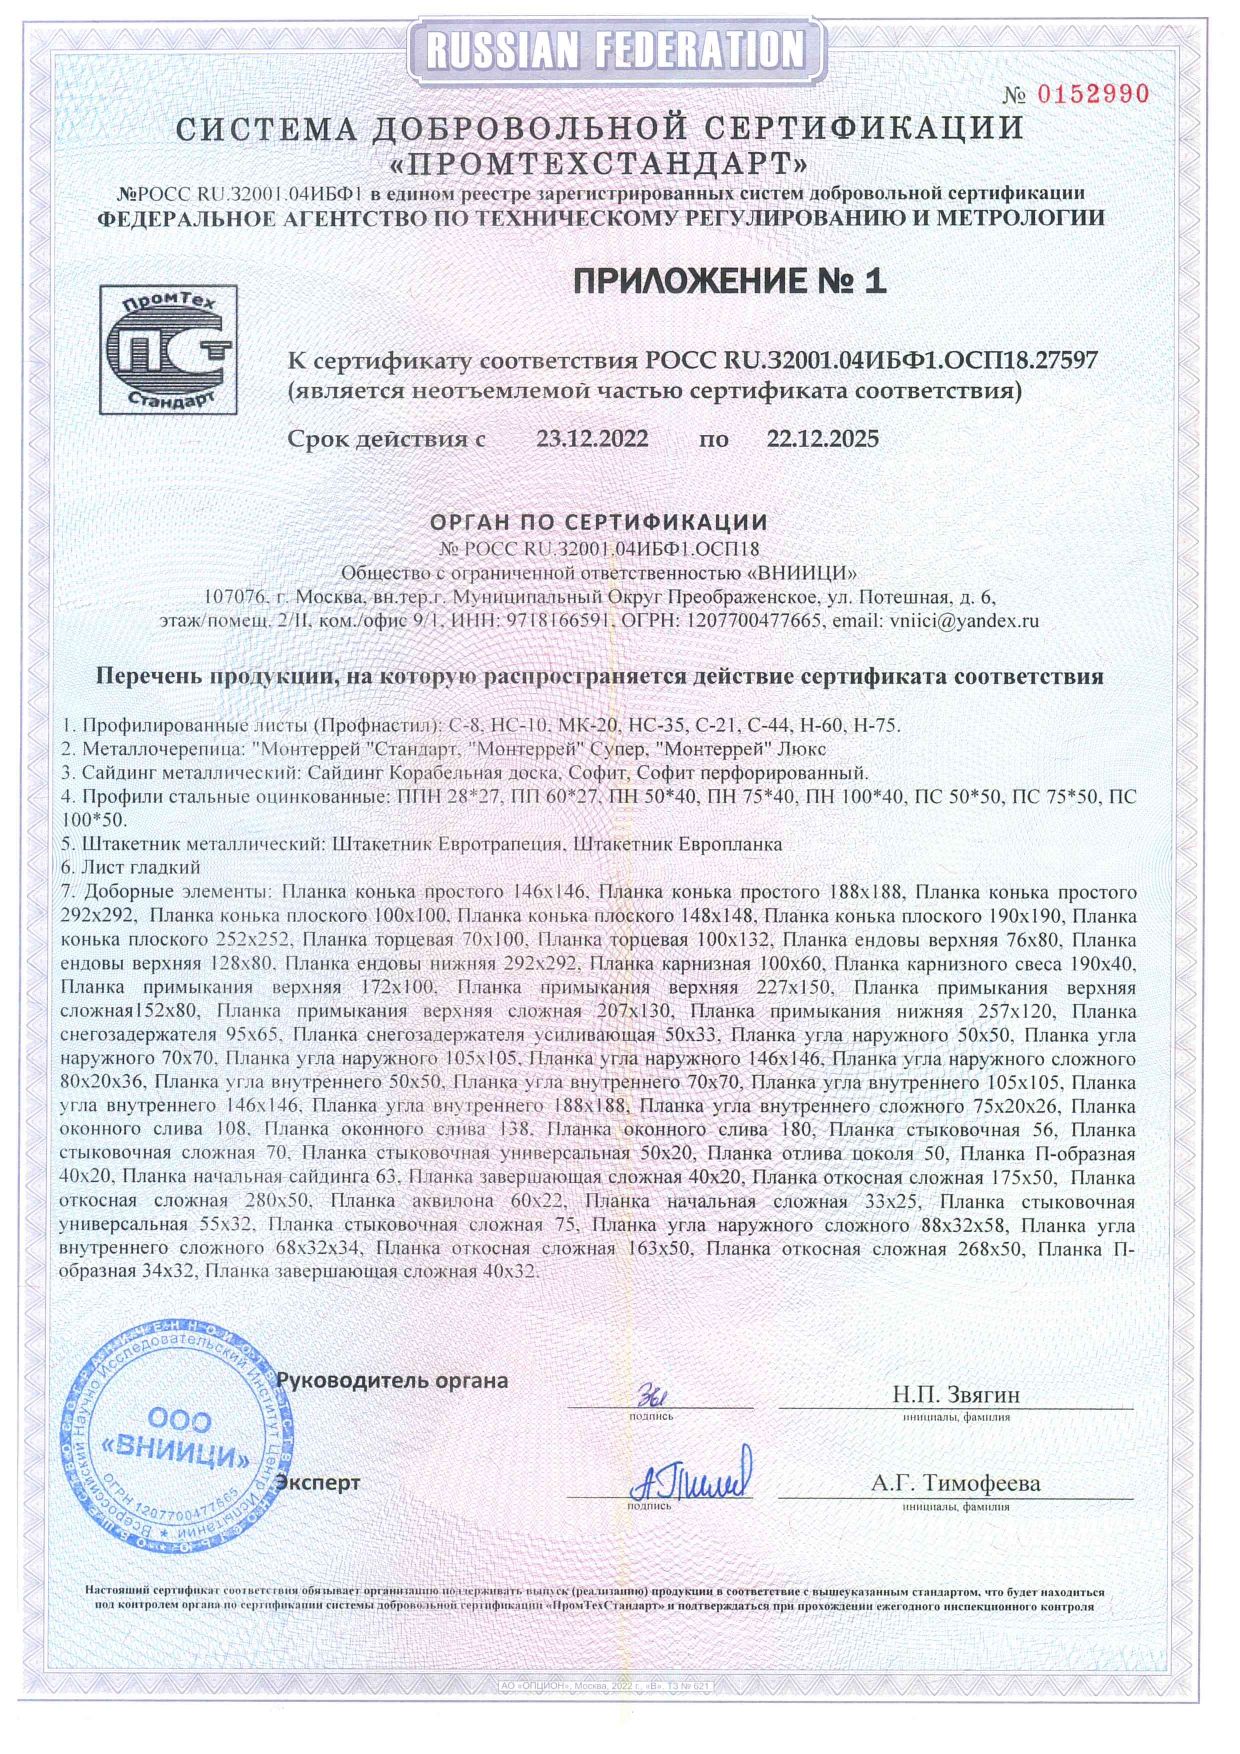 Приложение к сертификату соответcтвия НС